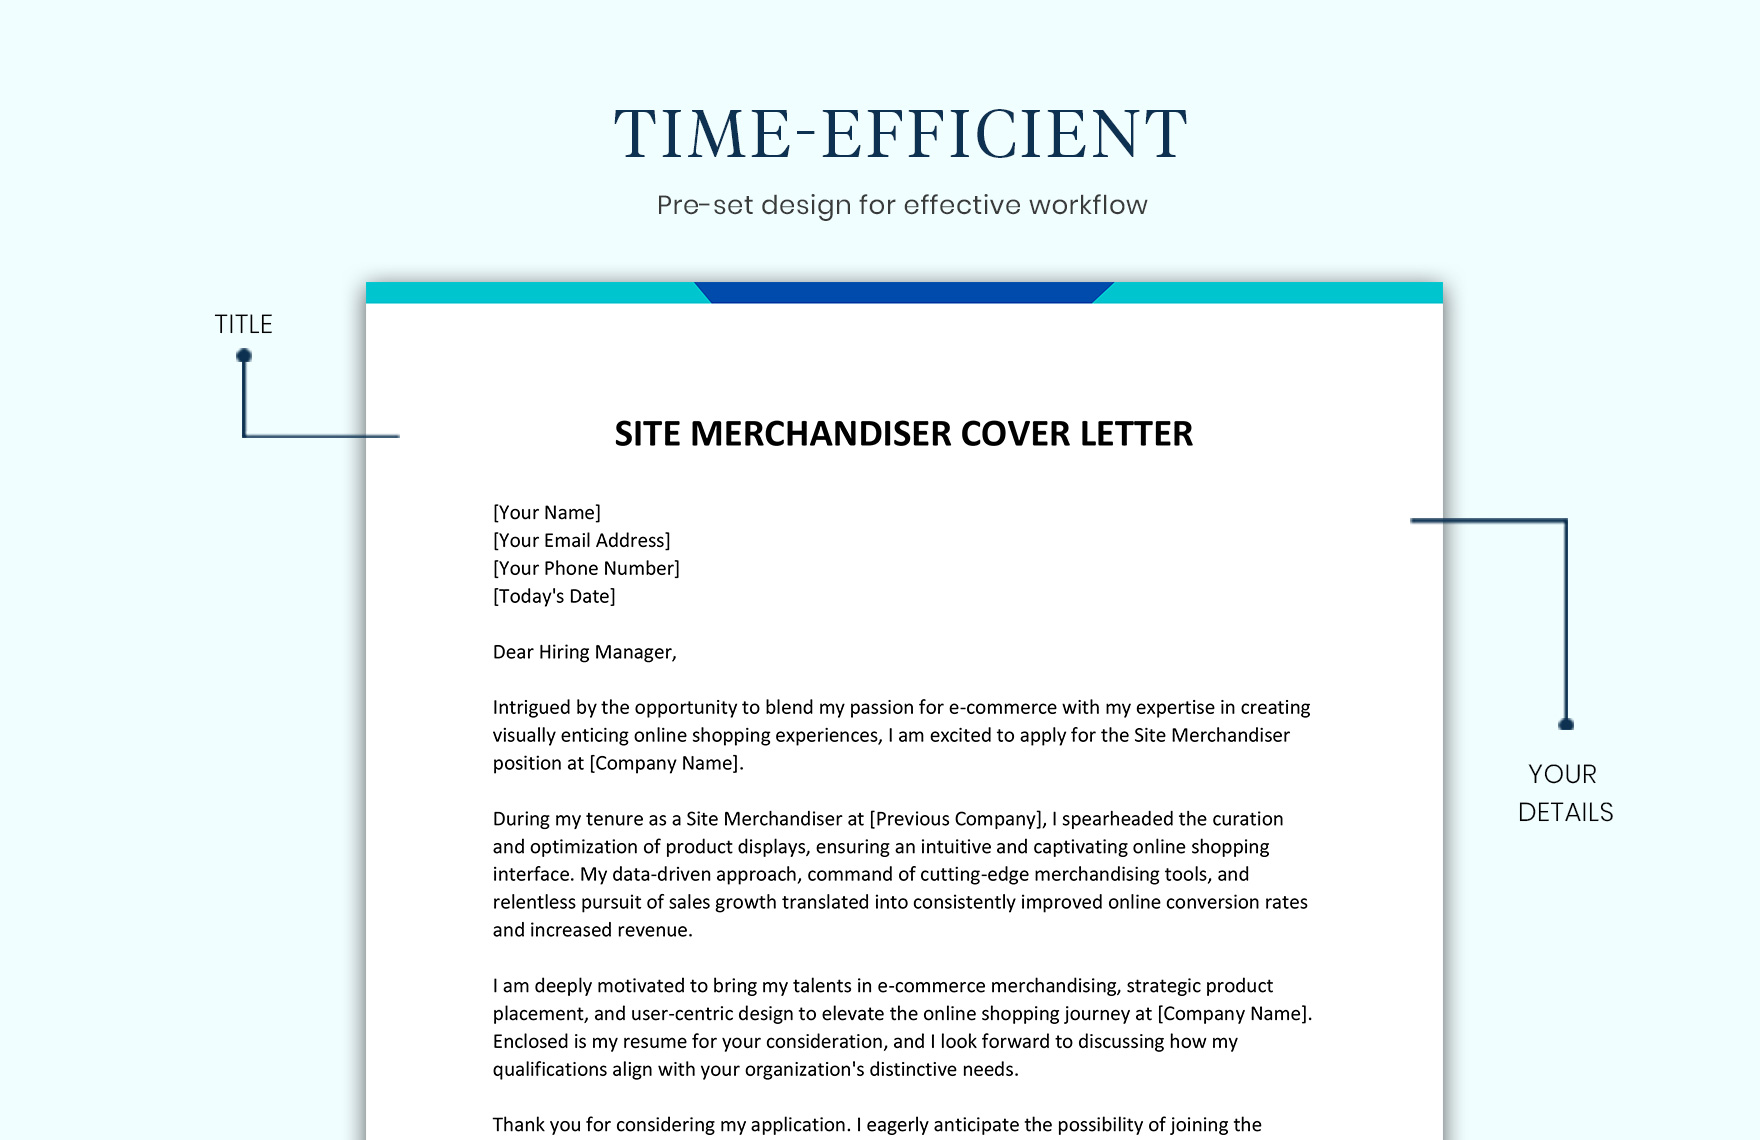 Site Merchandiser Cover Letter